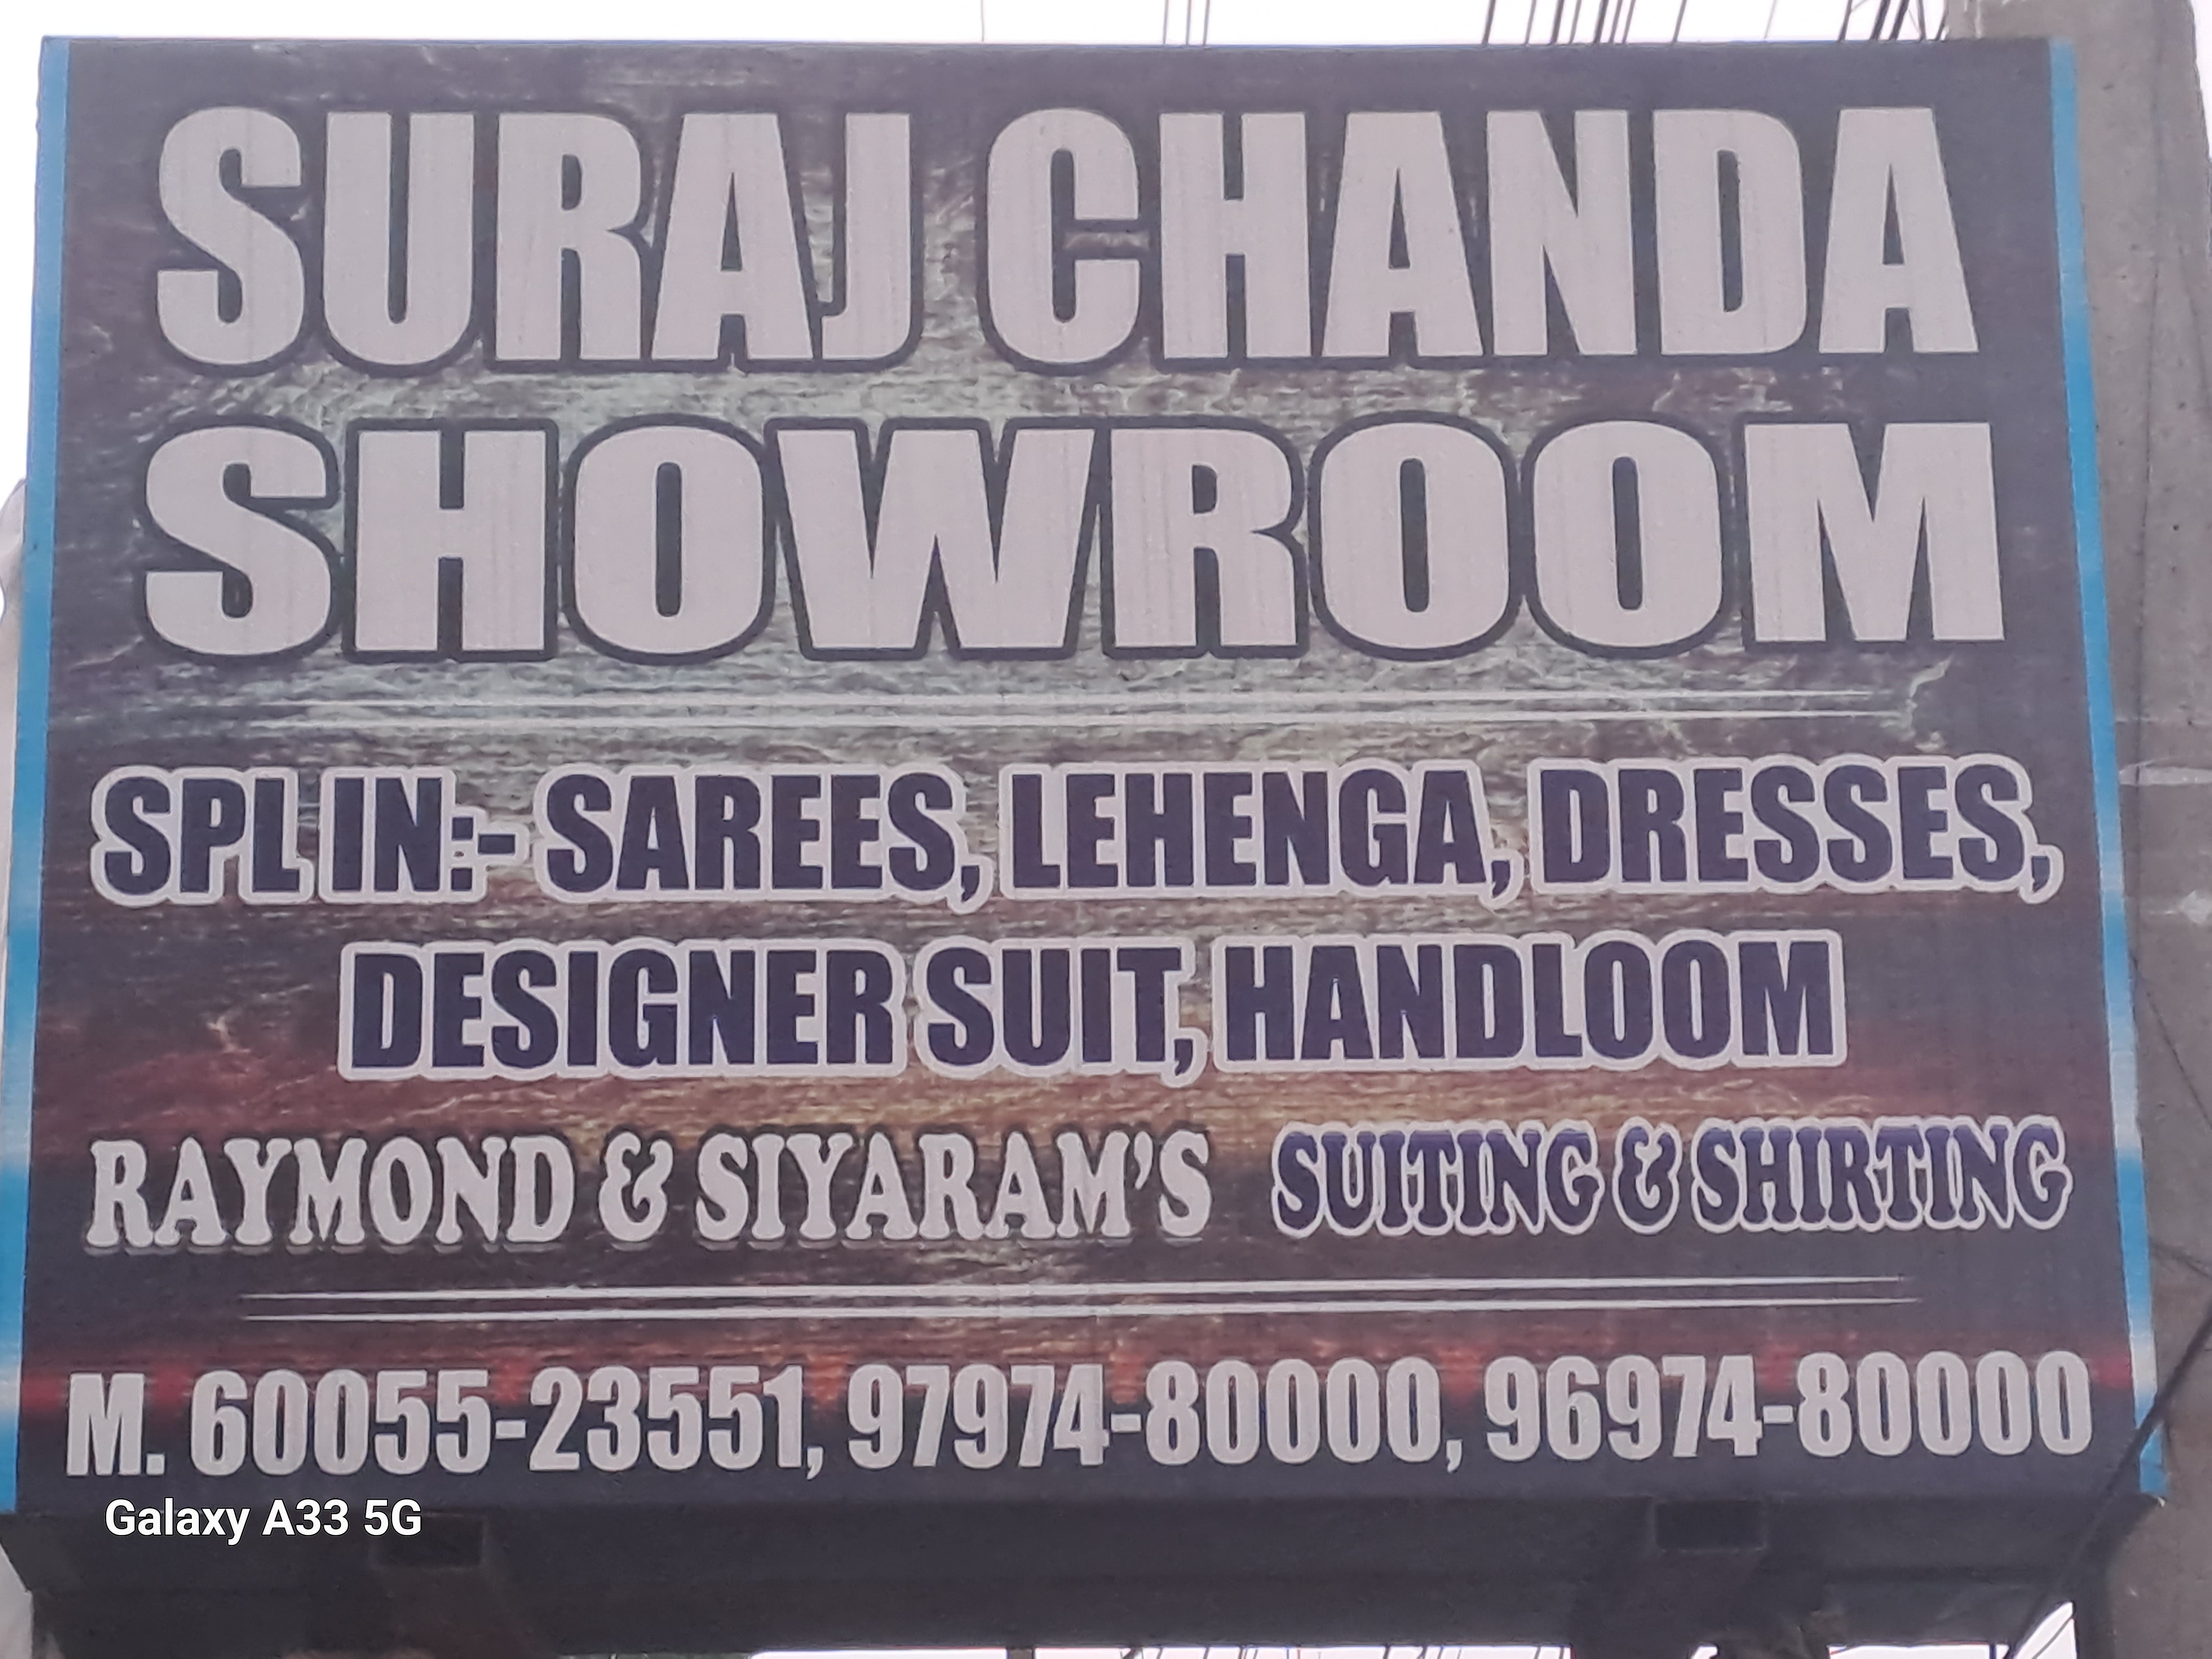 Suraj Chanda Showroom